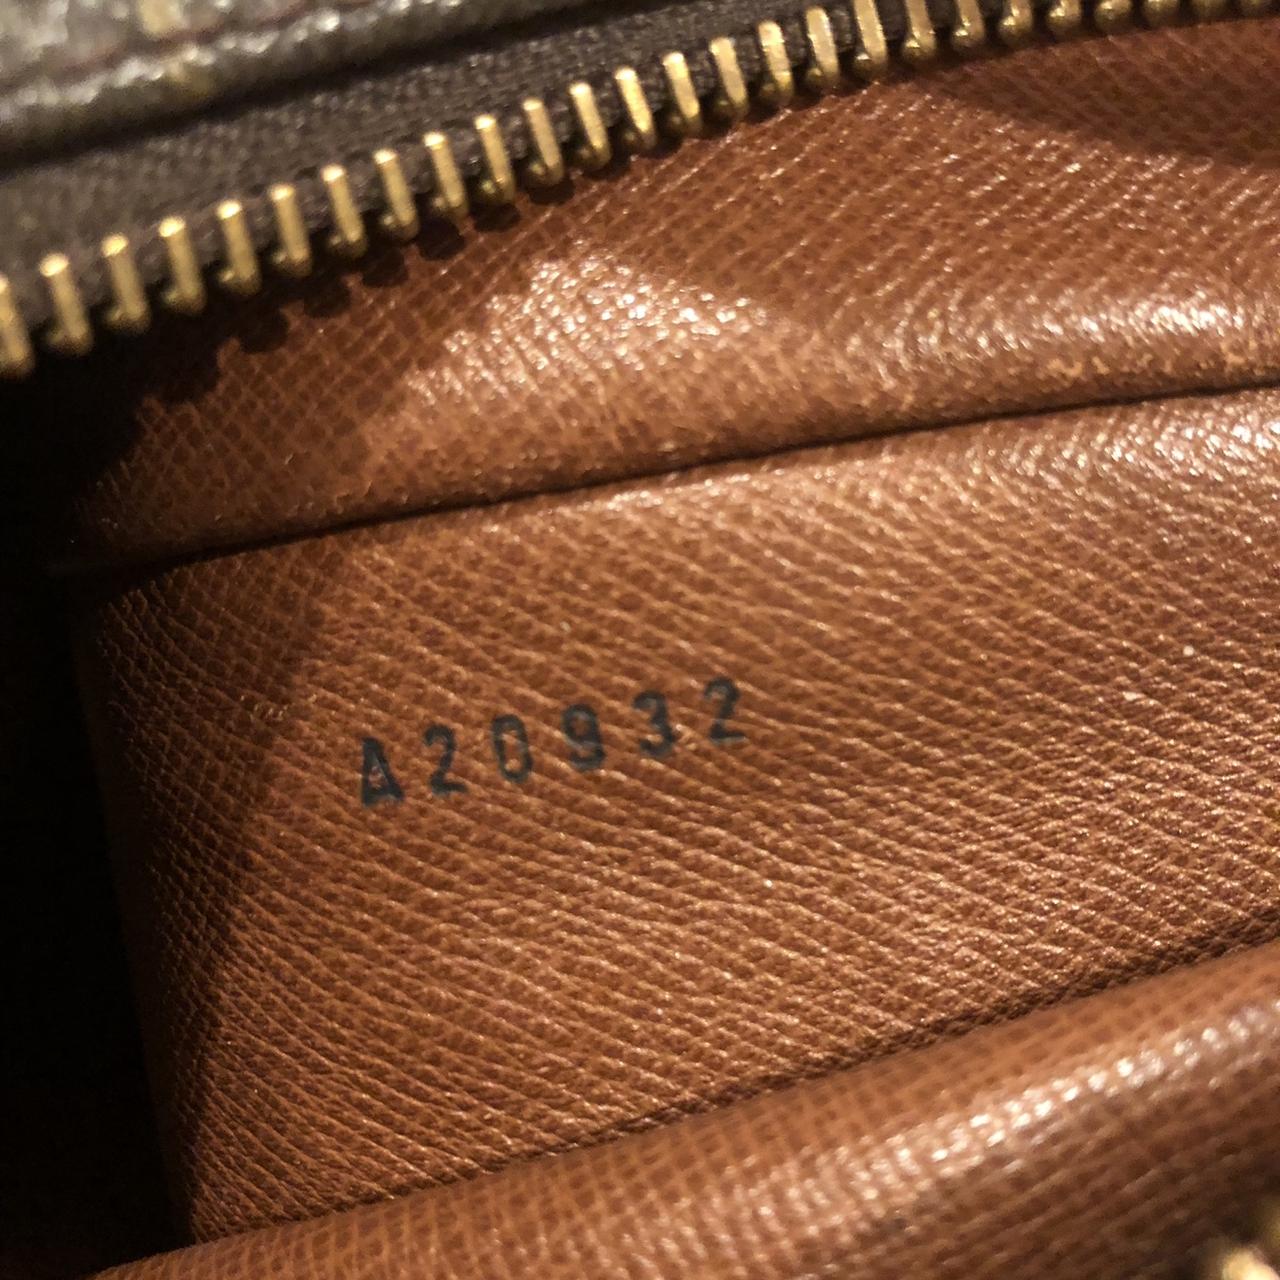 Genuine Louis Vuitton y2k handbag 😍😍 reasonable - Depop